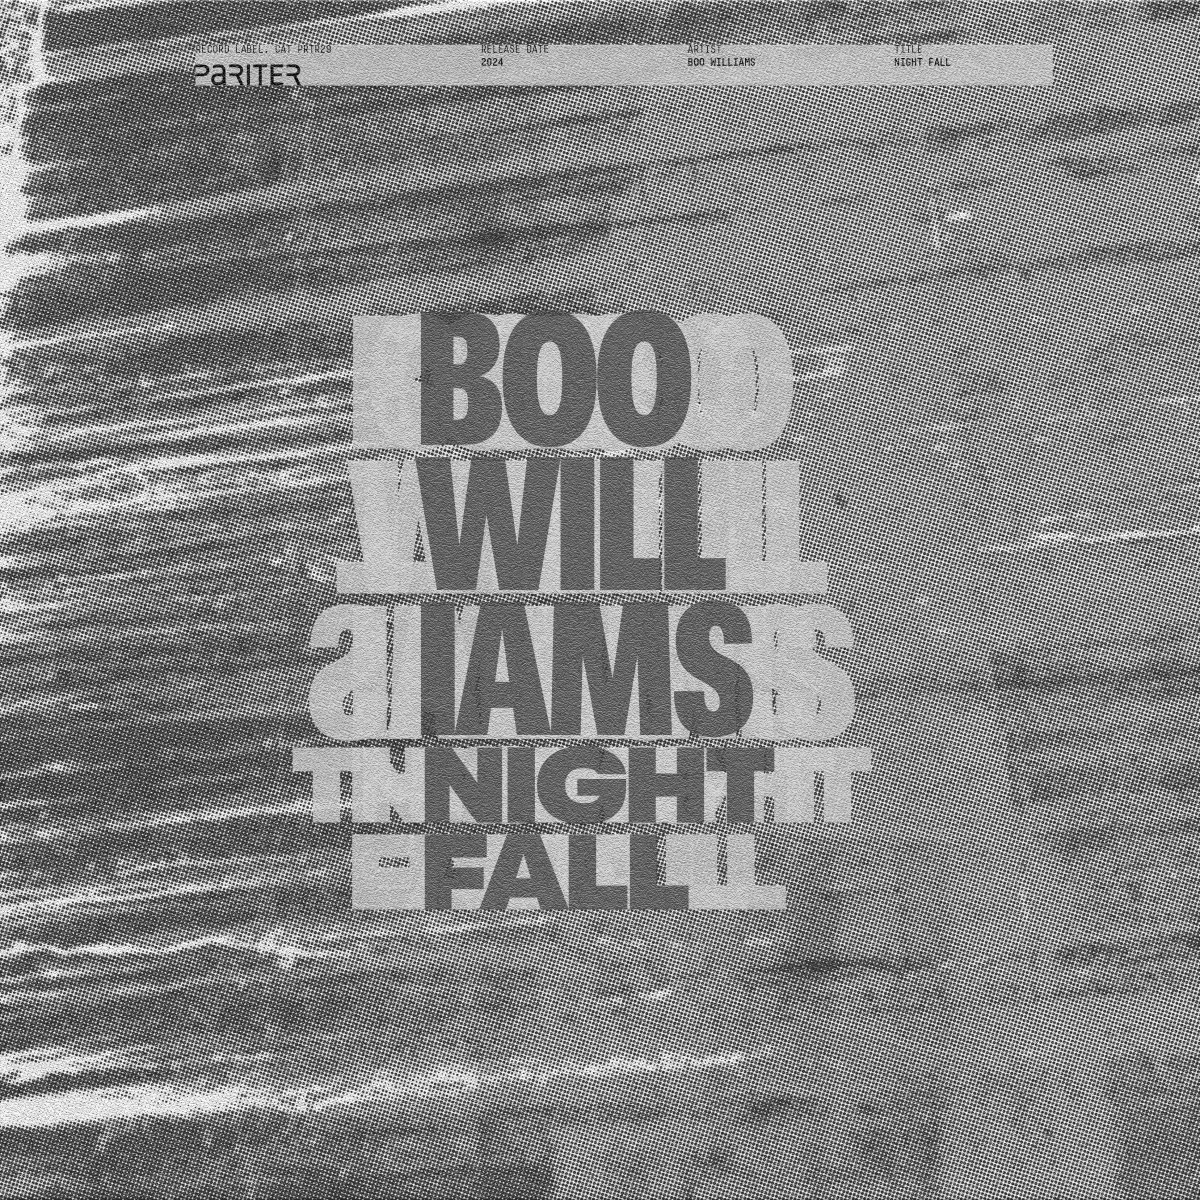 Boo Williams - Night Fall : 12inch